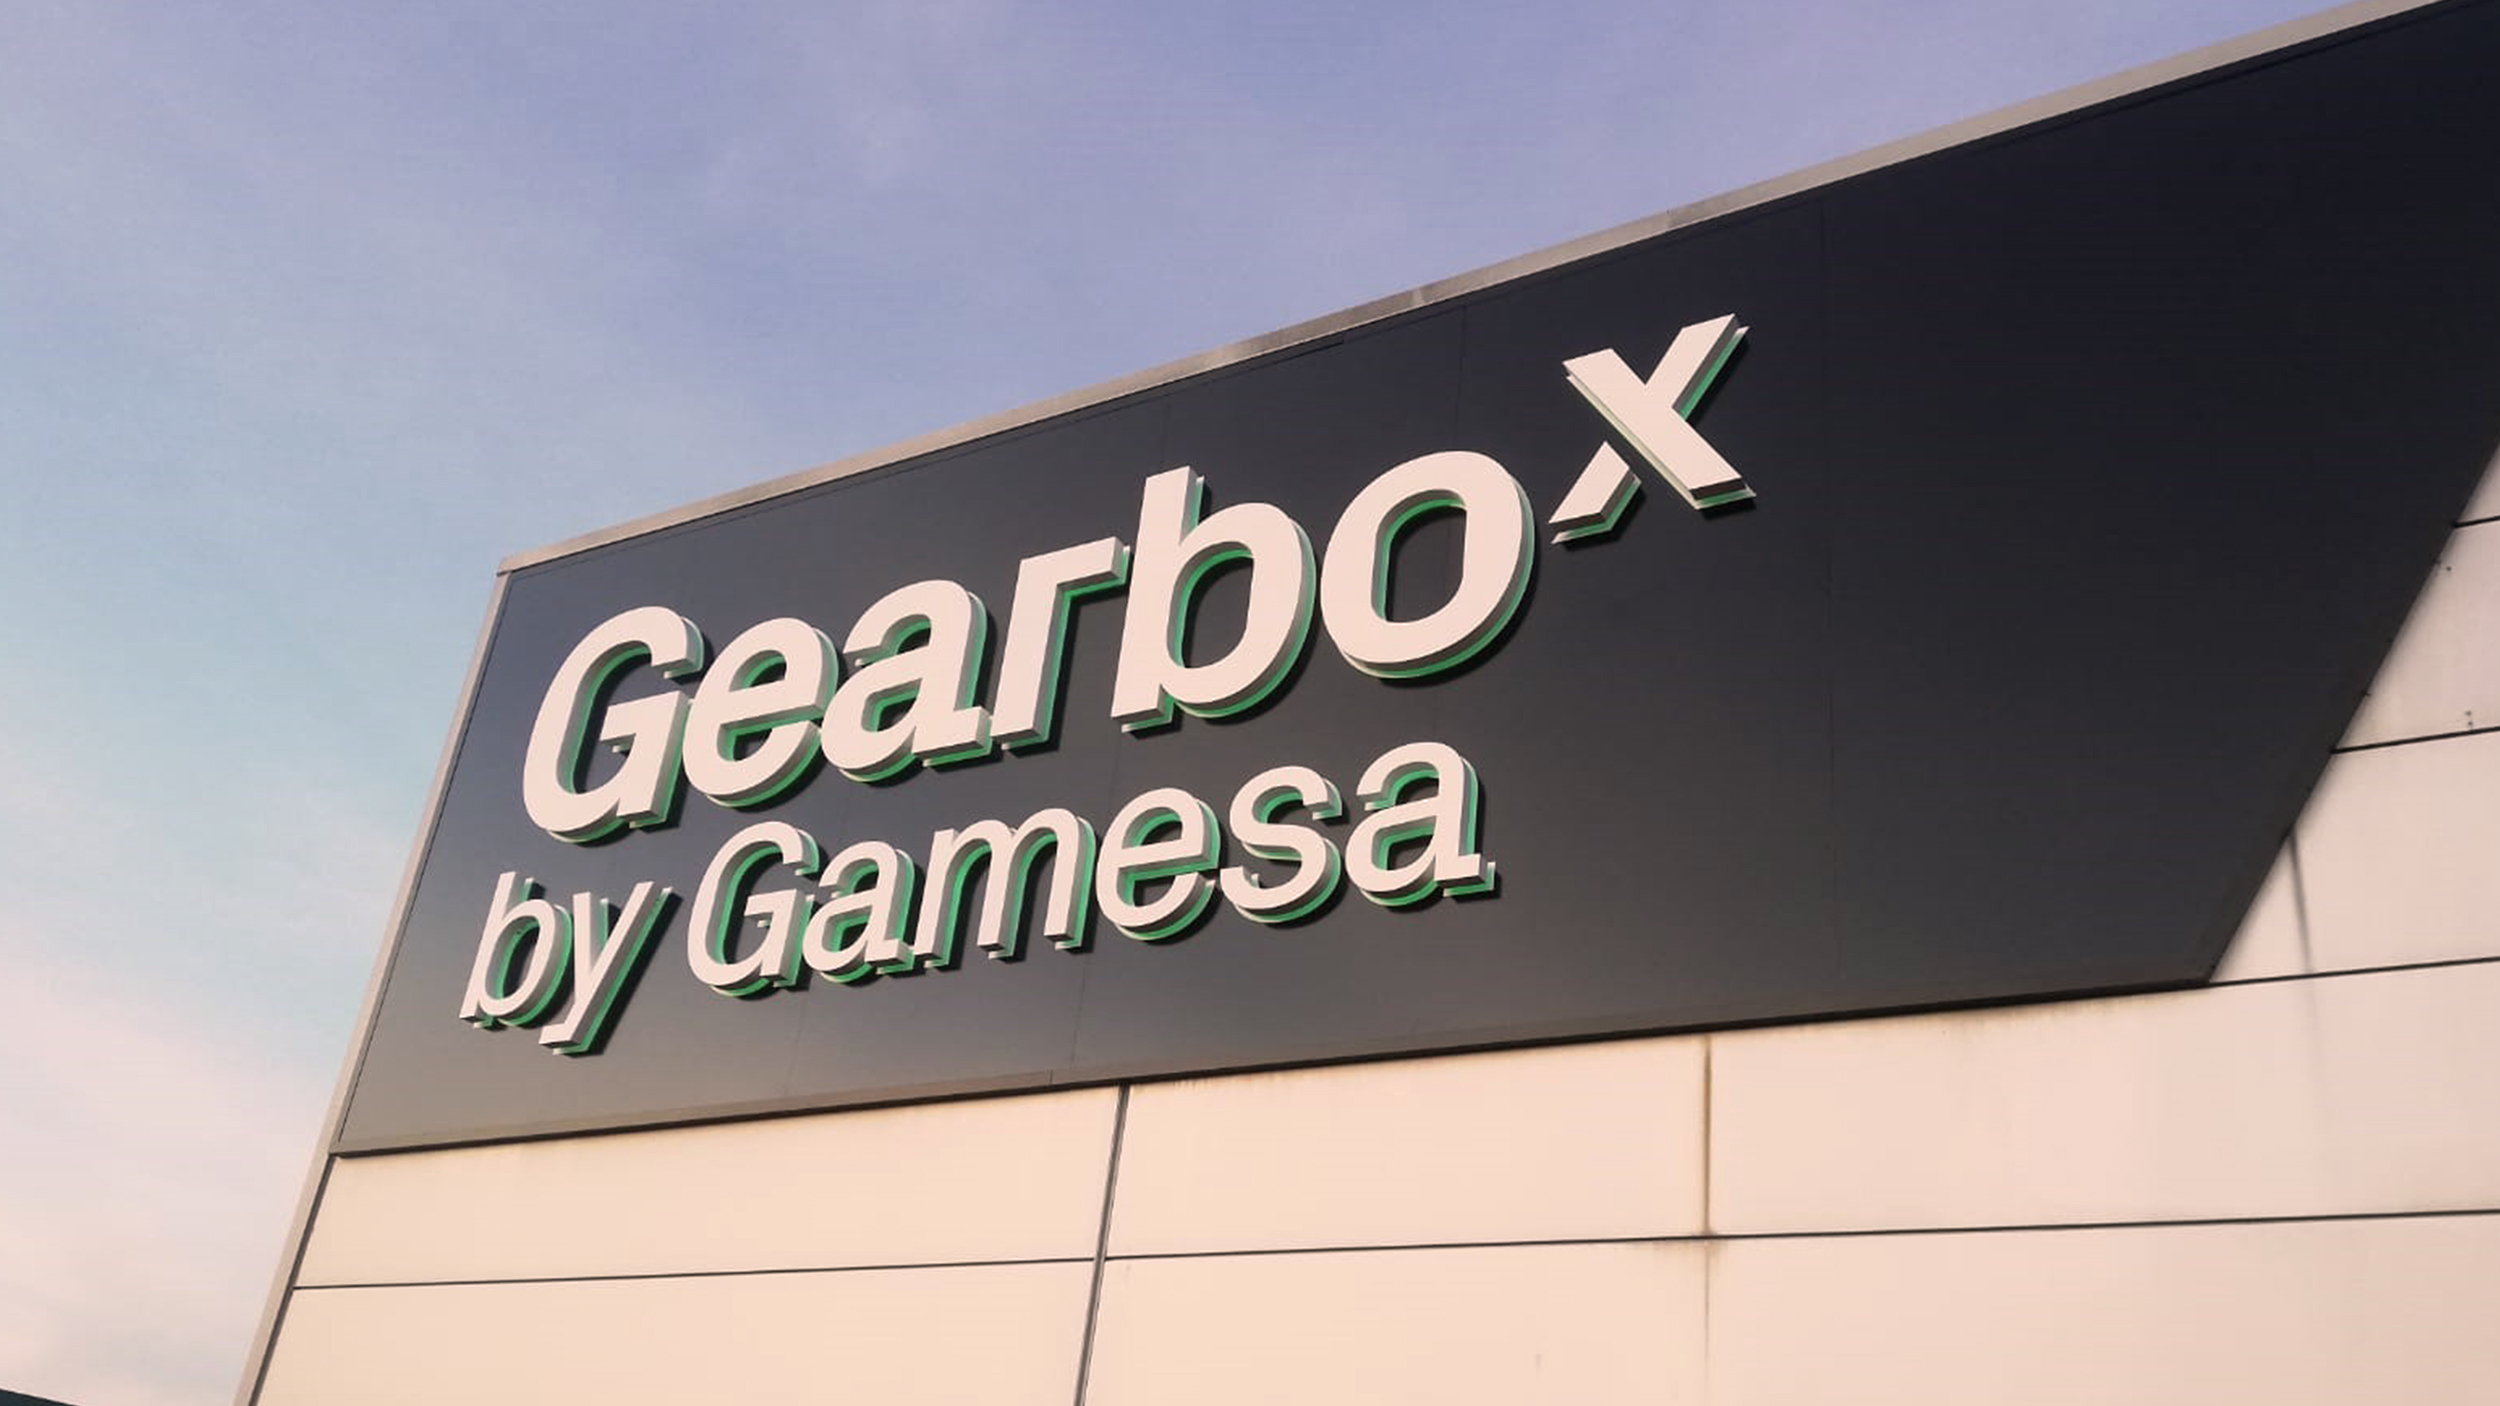 Gamesa Gearbox